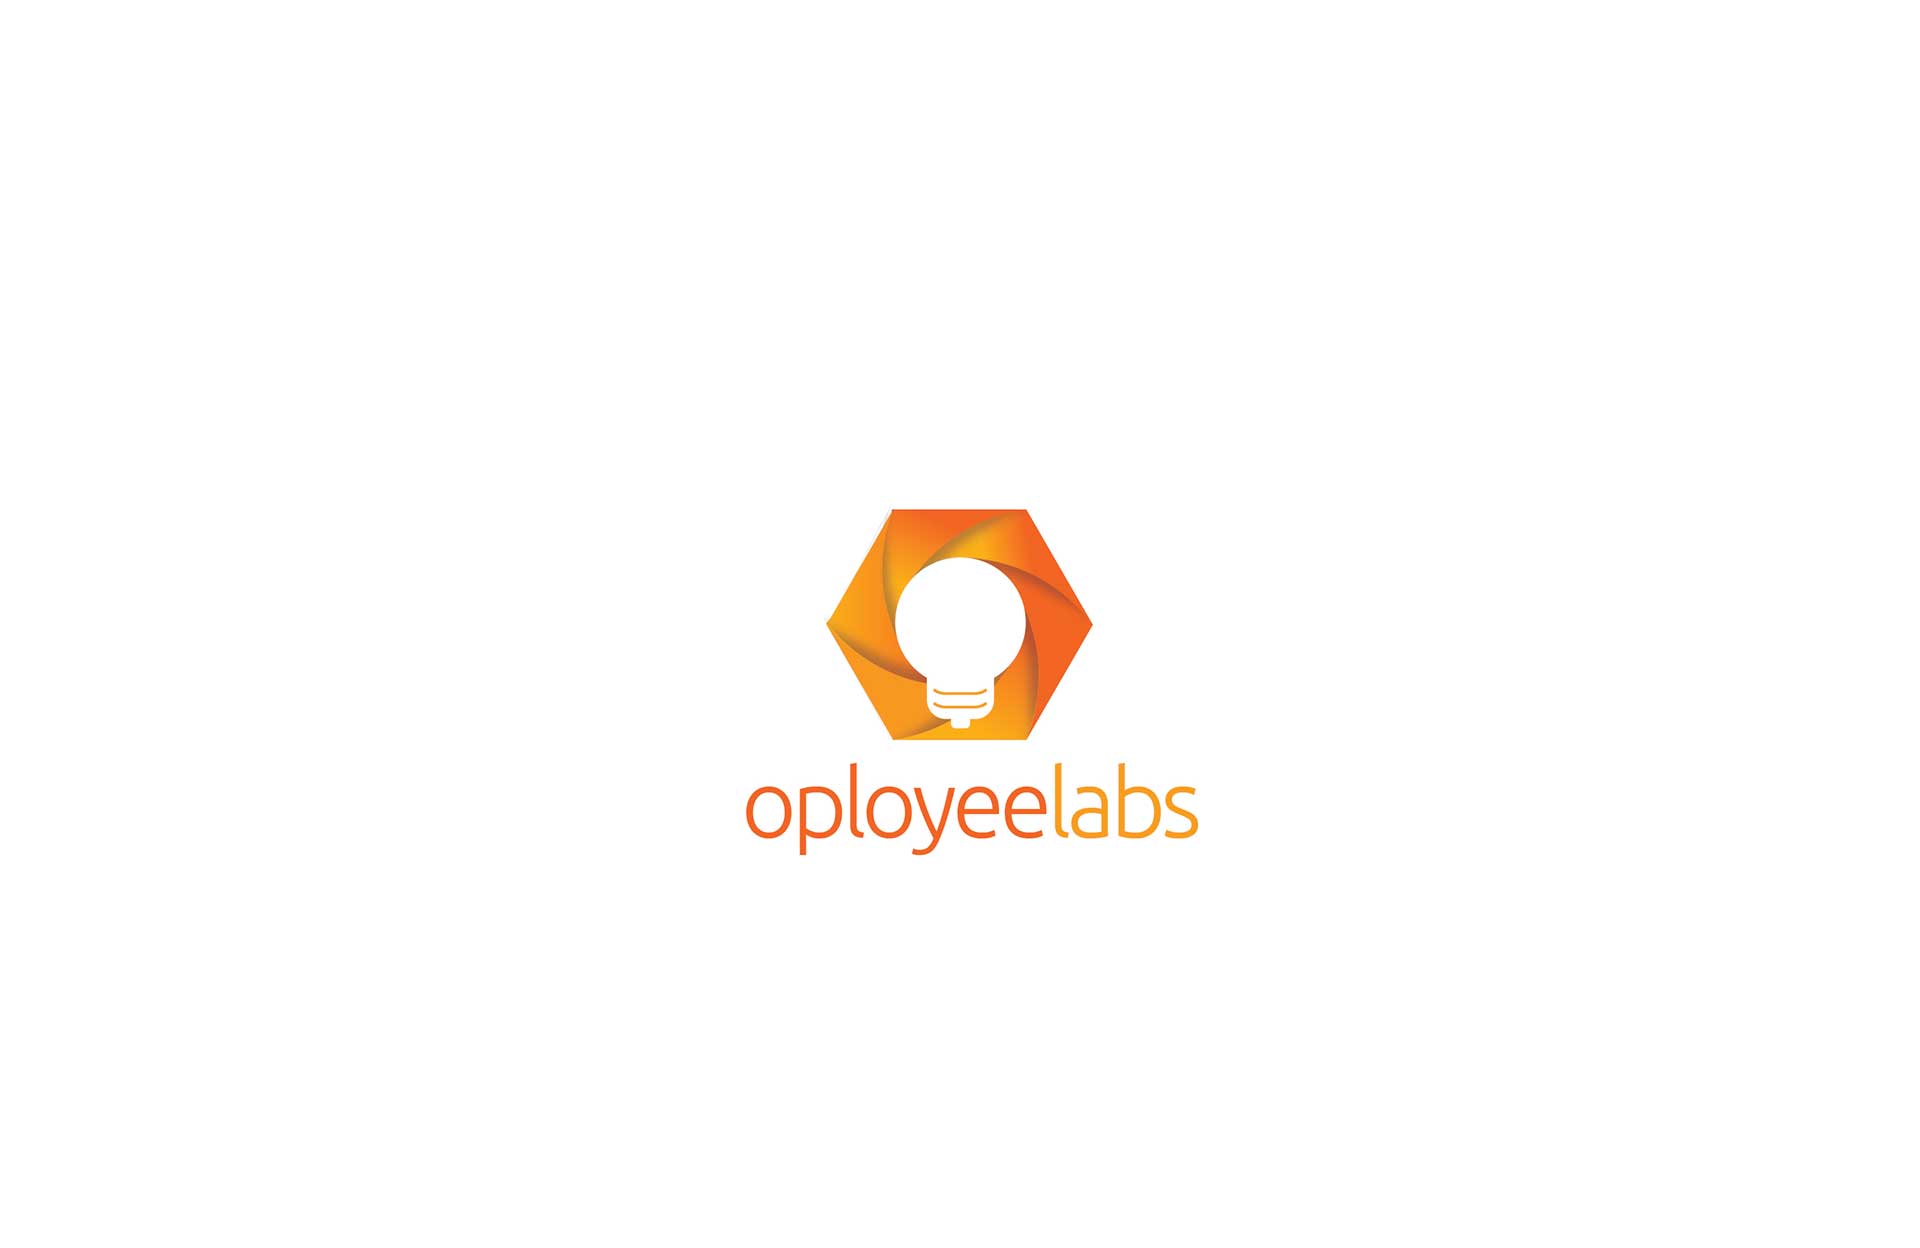 Oployeelabs-Logo-03-04